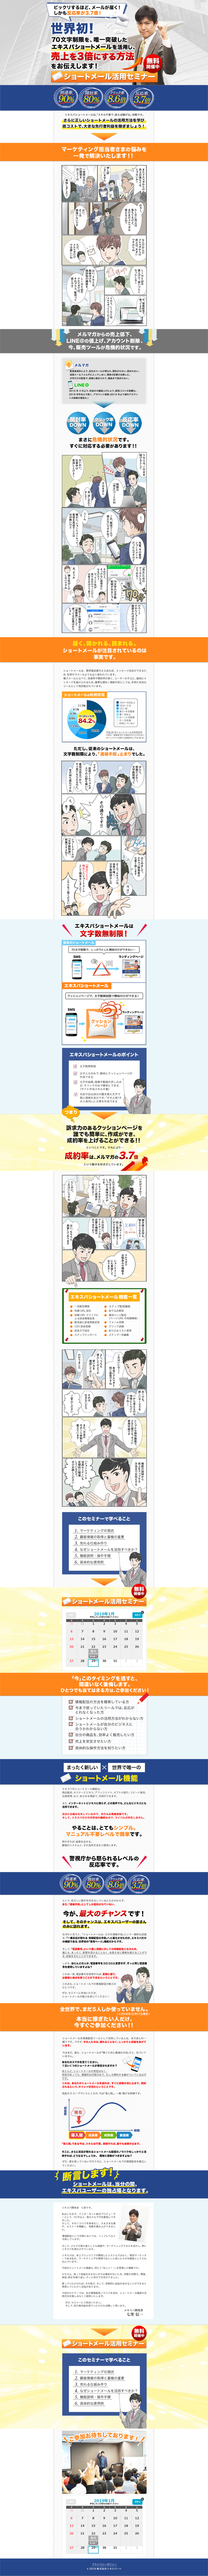 群馬県の漫画LP制作、広告運用代行サービス｜HIRAKU DESIGN